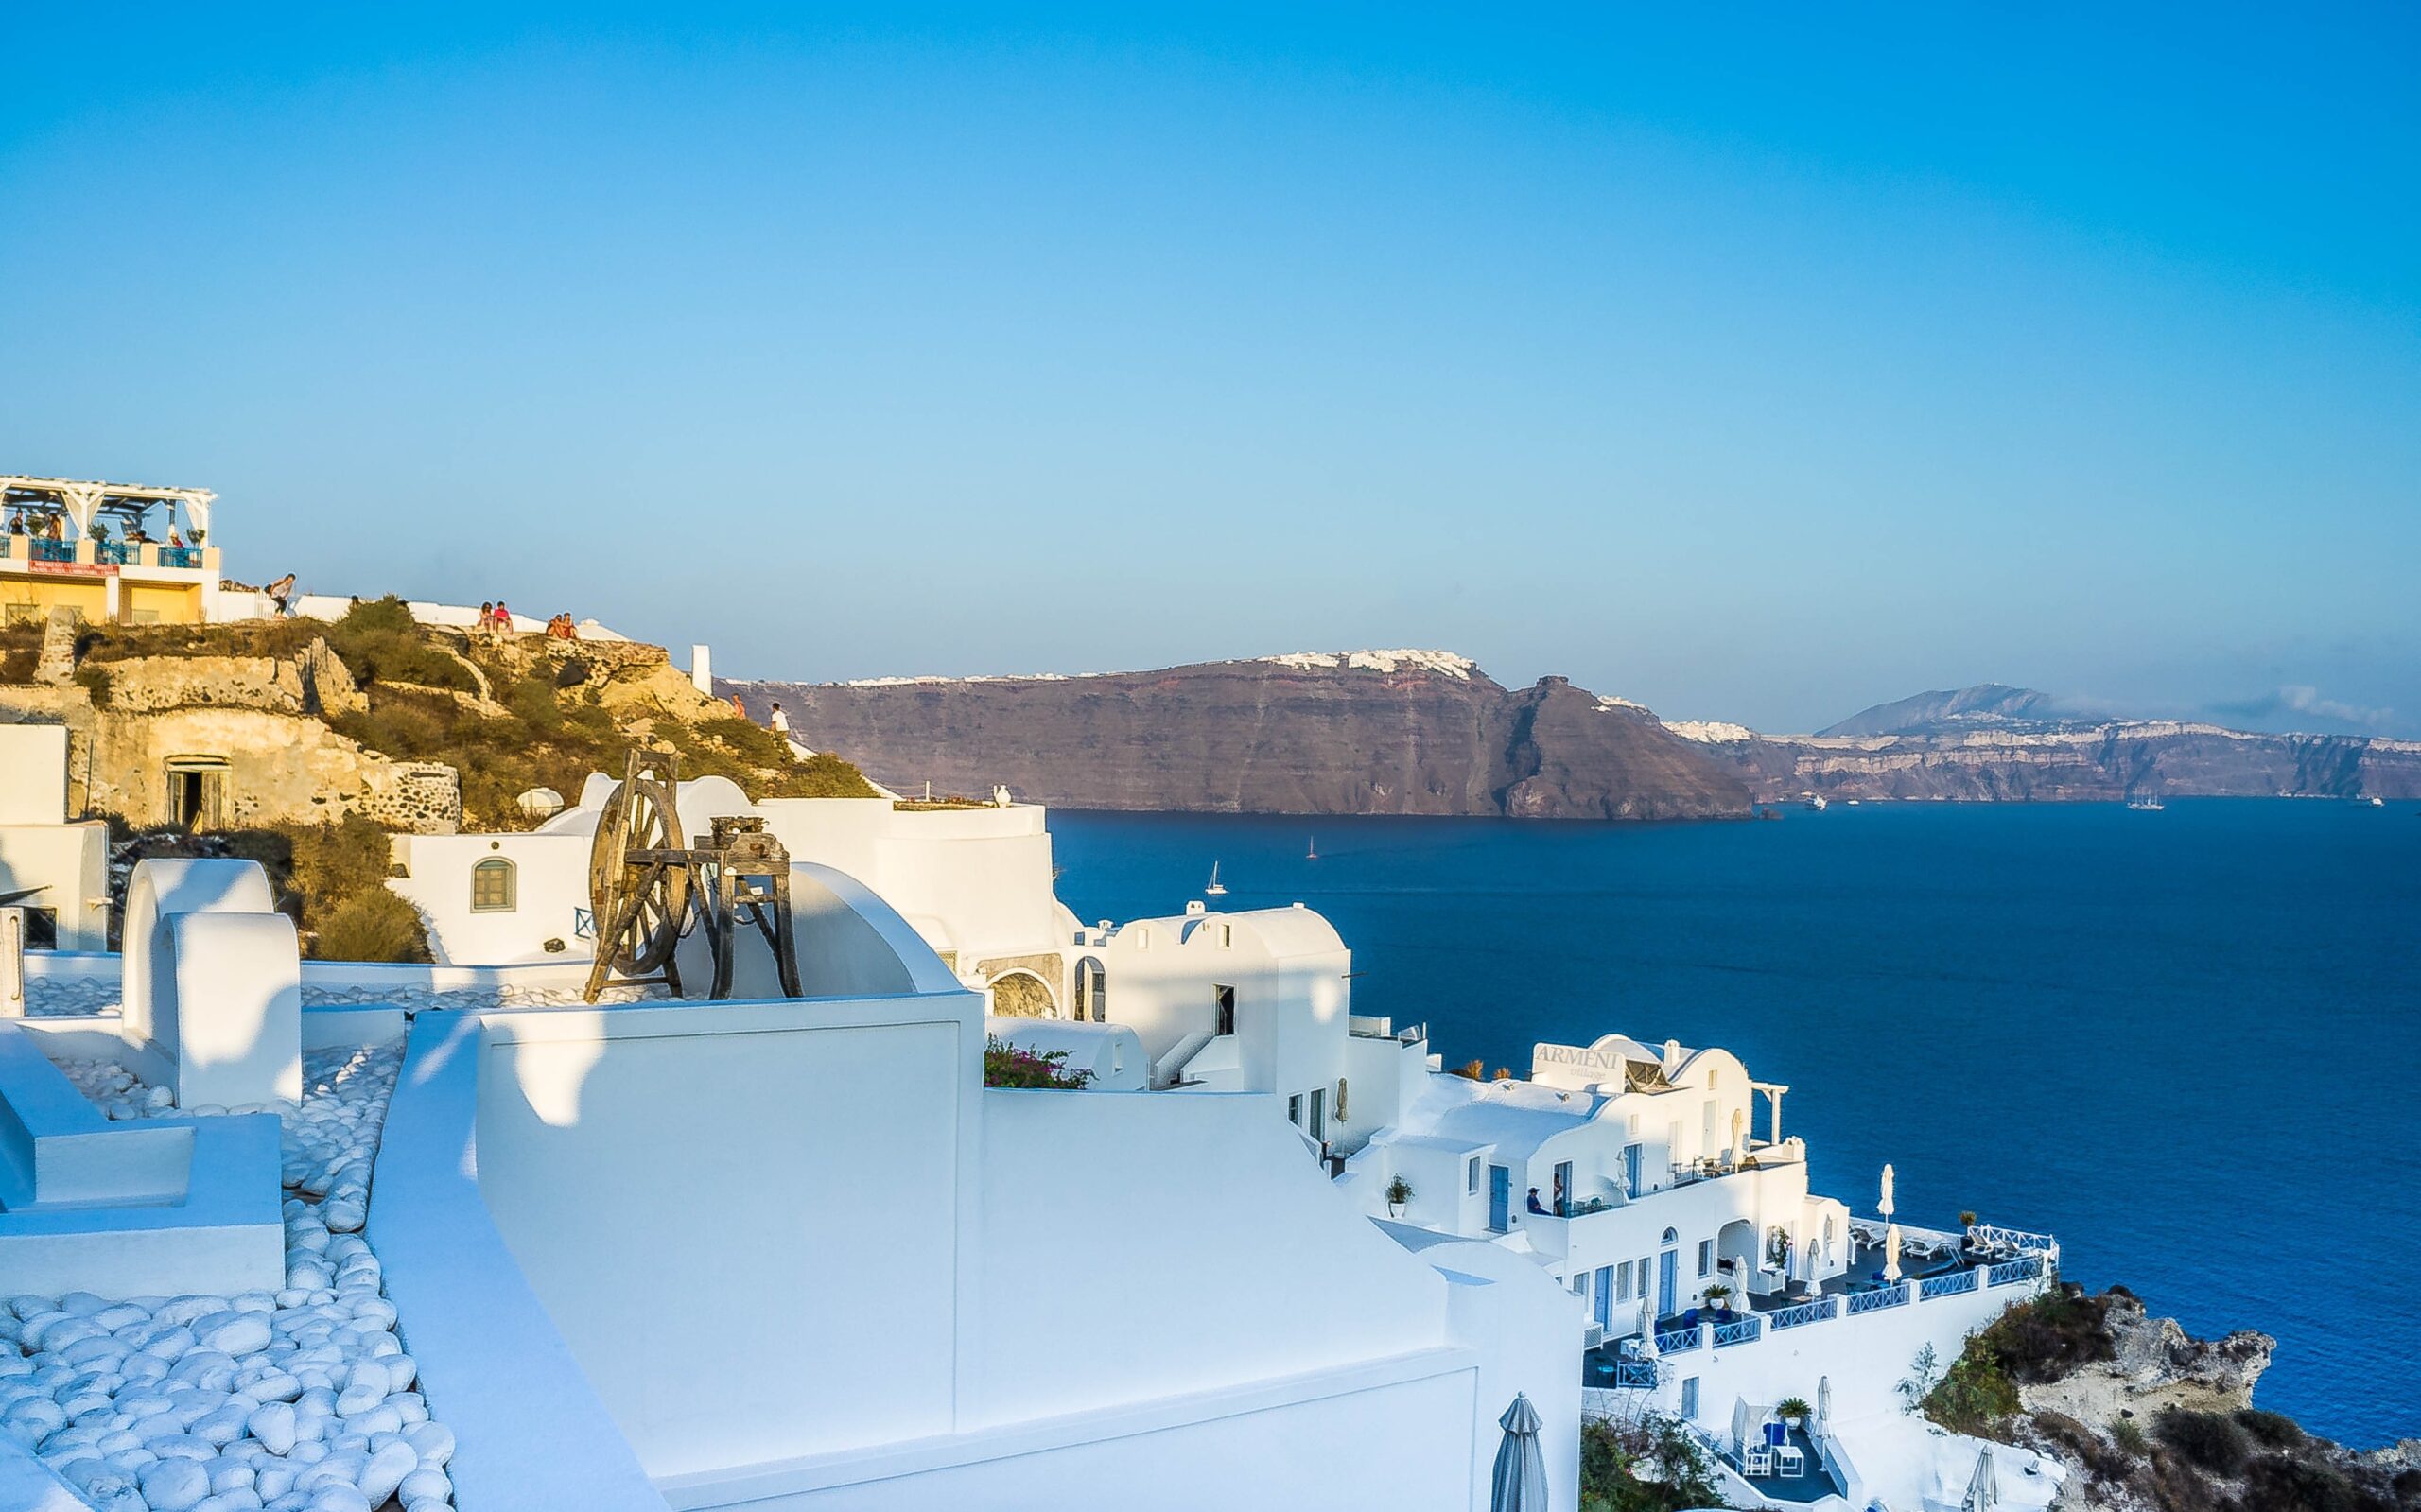 Återöppnade stränderi Grekland kan öka turismen och ekonomin i stort genom Global X MSCI Greece ETF (GREK). Den senaste helgen lättade Grekland sina